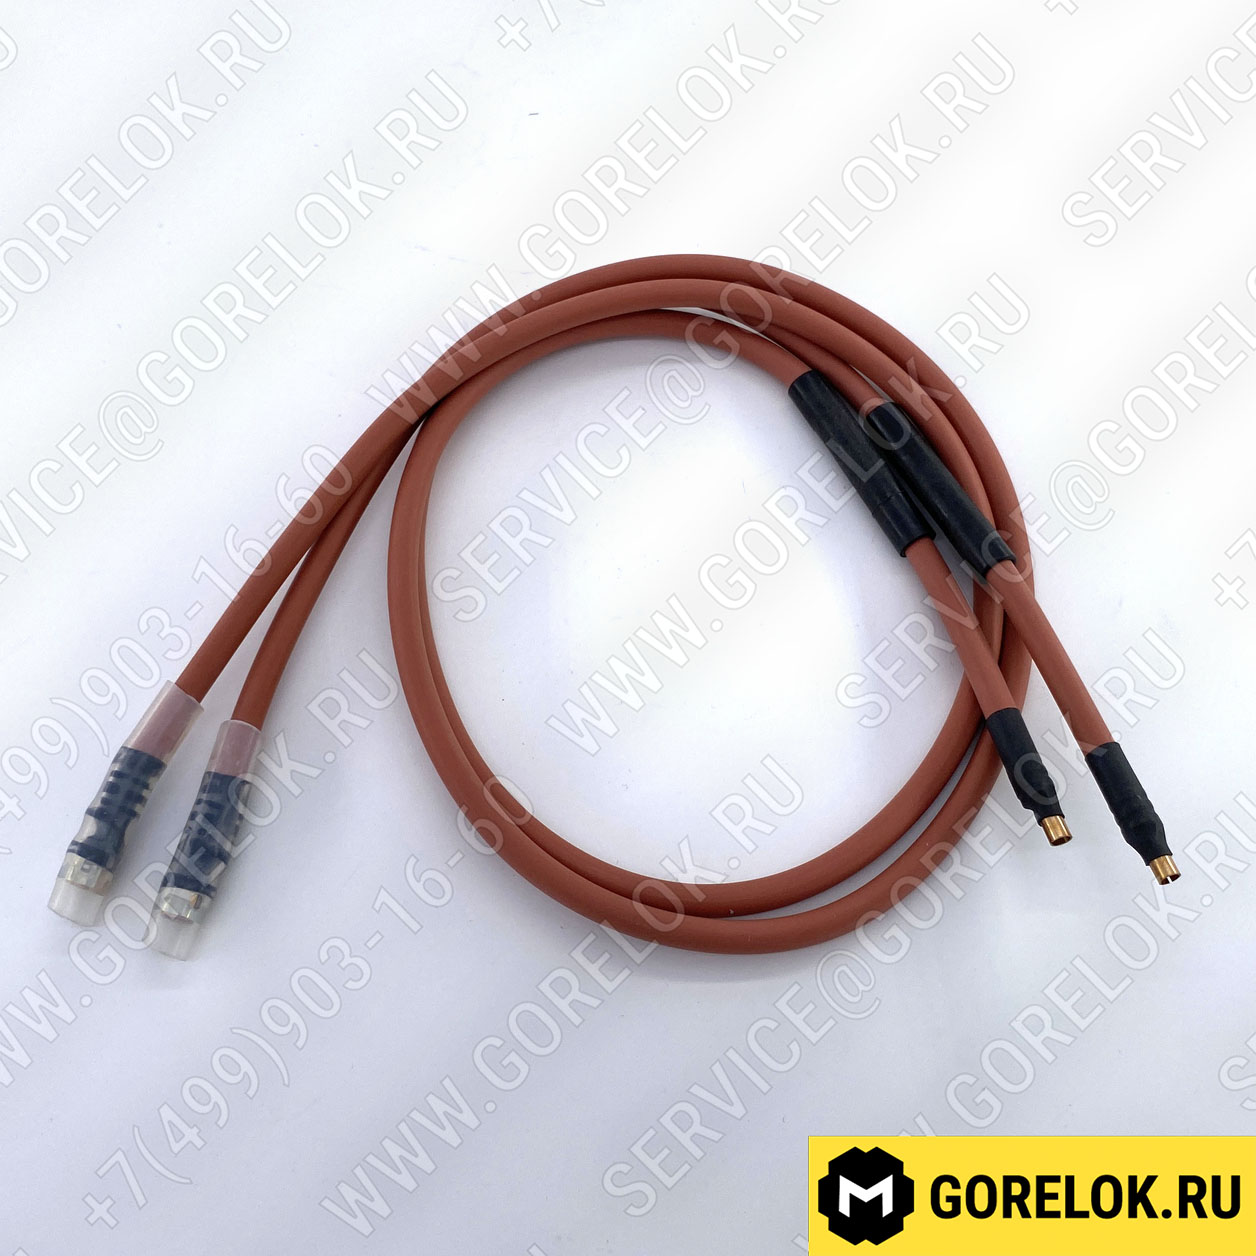 Комплект кабелей поджига Elco 900 мм арт.13010059 цена, купить